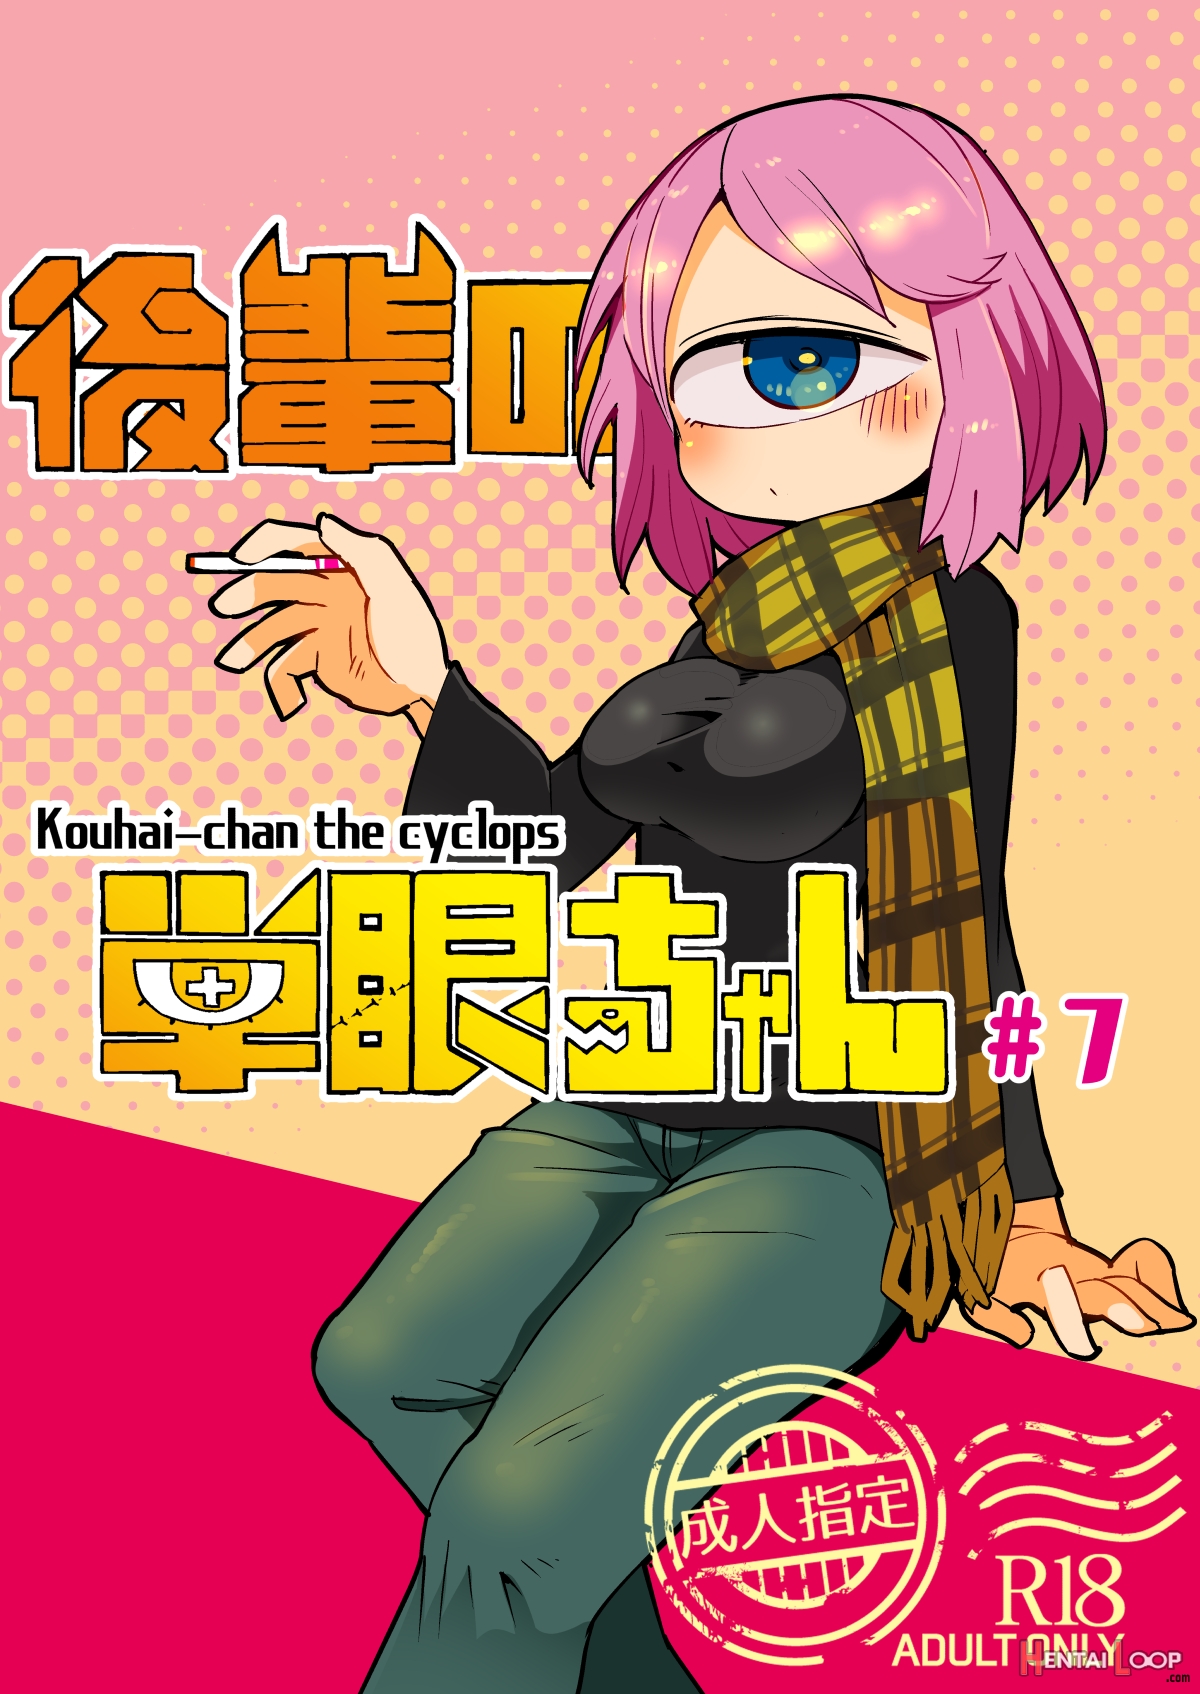 Cyclops Monster Hentai - Kouhai-chan The Cyclops #7 (by Masha) - Hentai doujinshi for free at  HentaiLoop